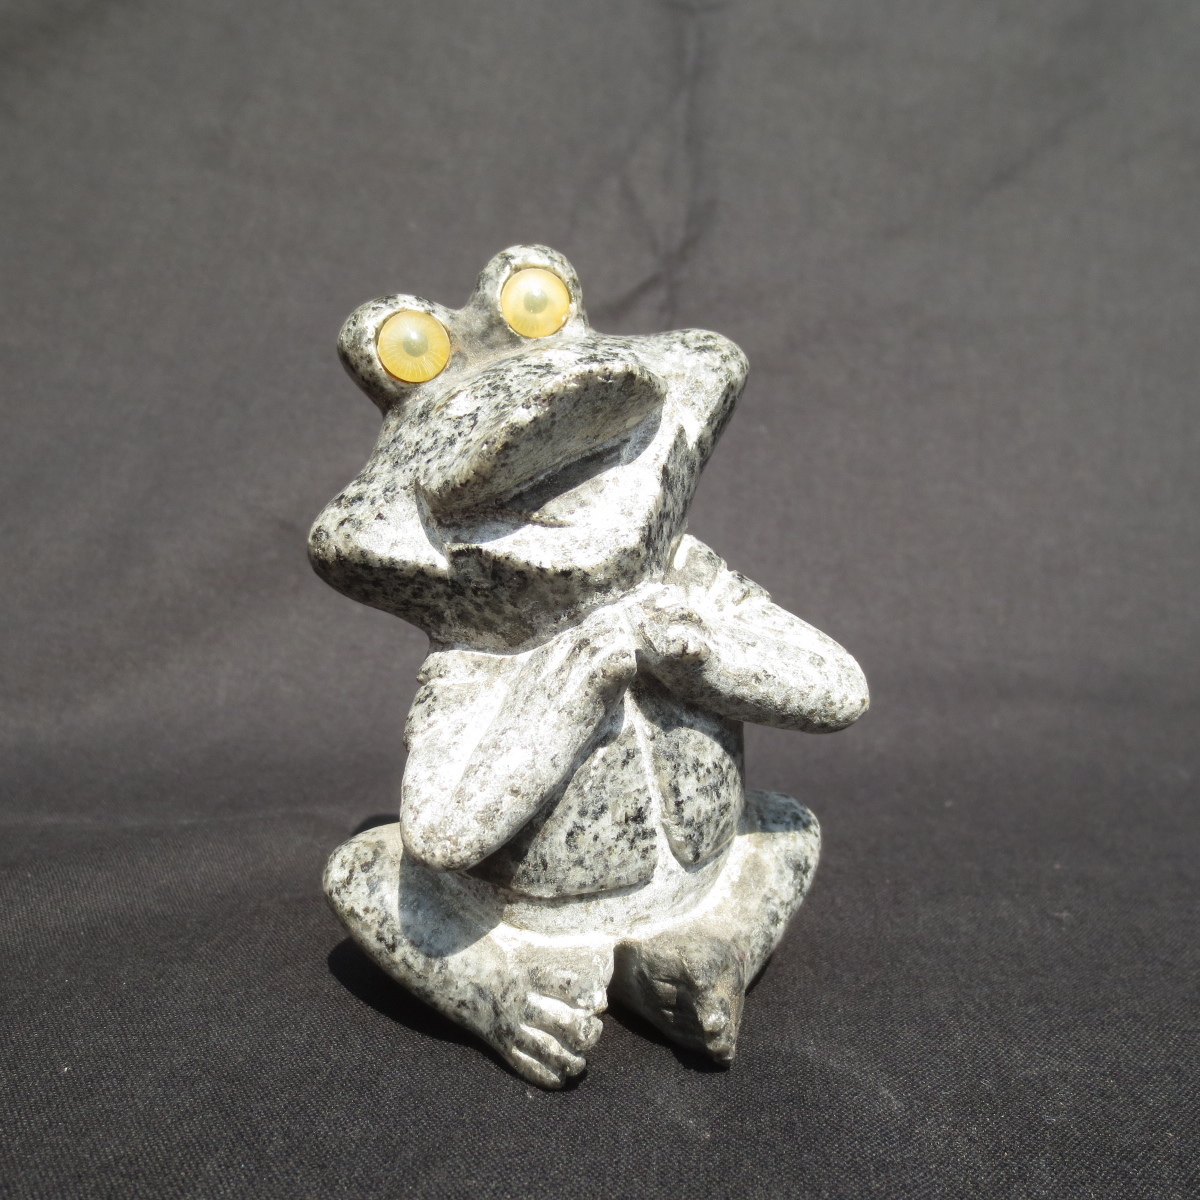 蛙 かえる カエル 正規逆輸入品 本日特価 ひょうきん かわいい Frog 置物 雑貨 KA02 御影石のオブジェ 石のフロッグ 置き物 送料無料